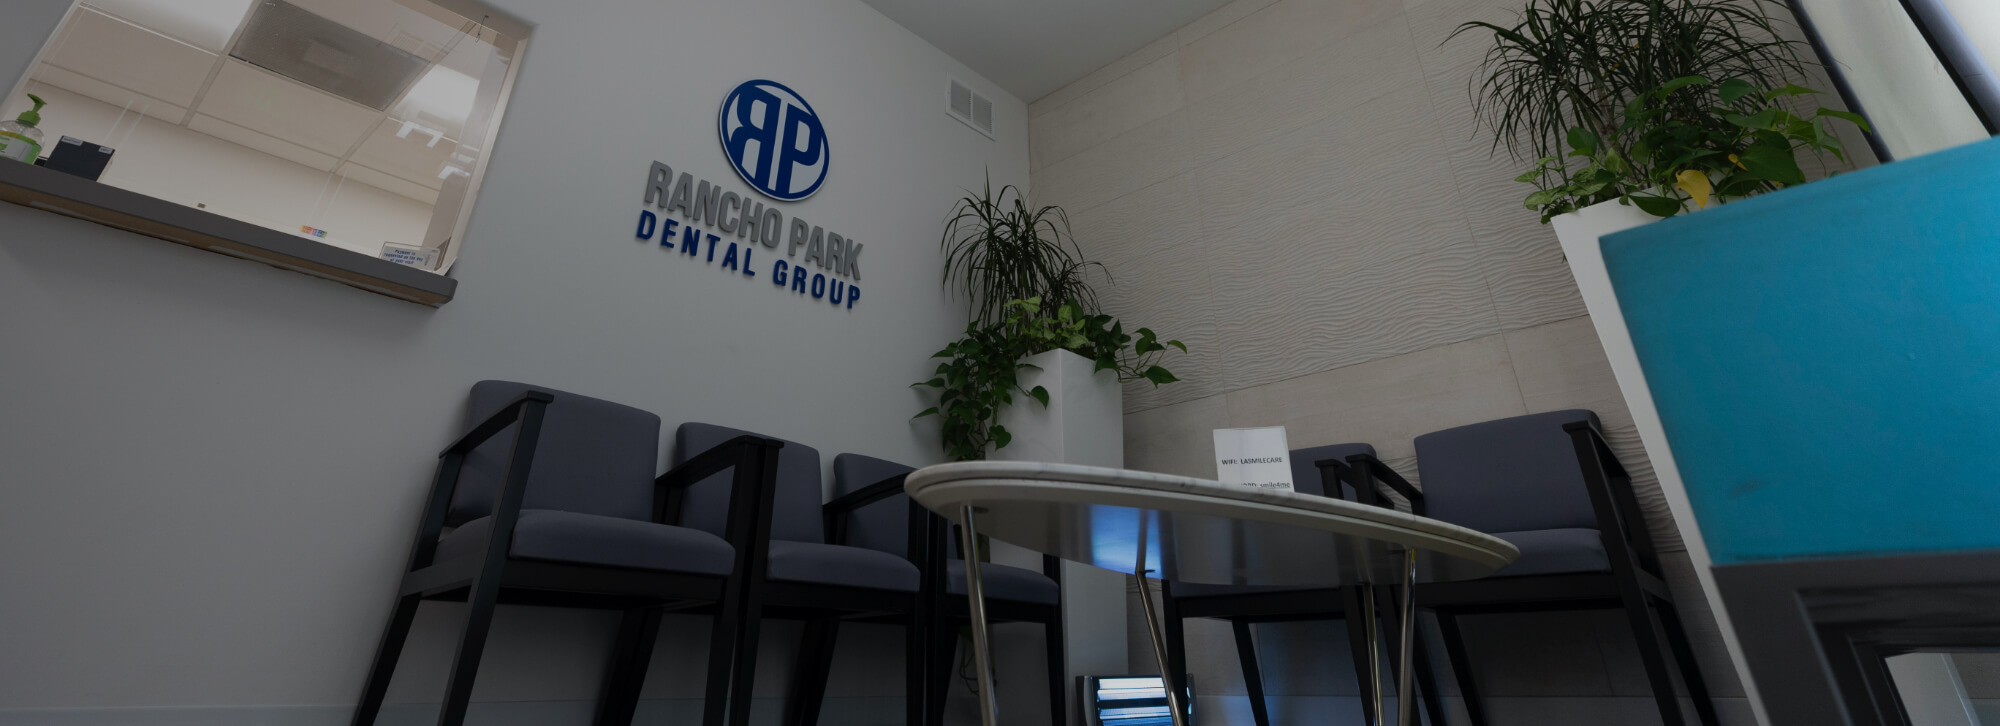 Waiting room at Rancho Park Dental Group